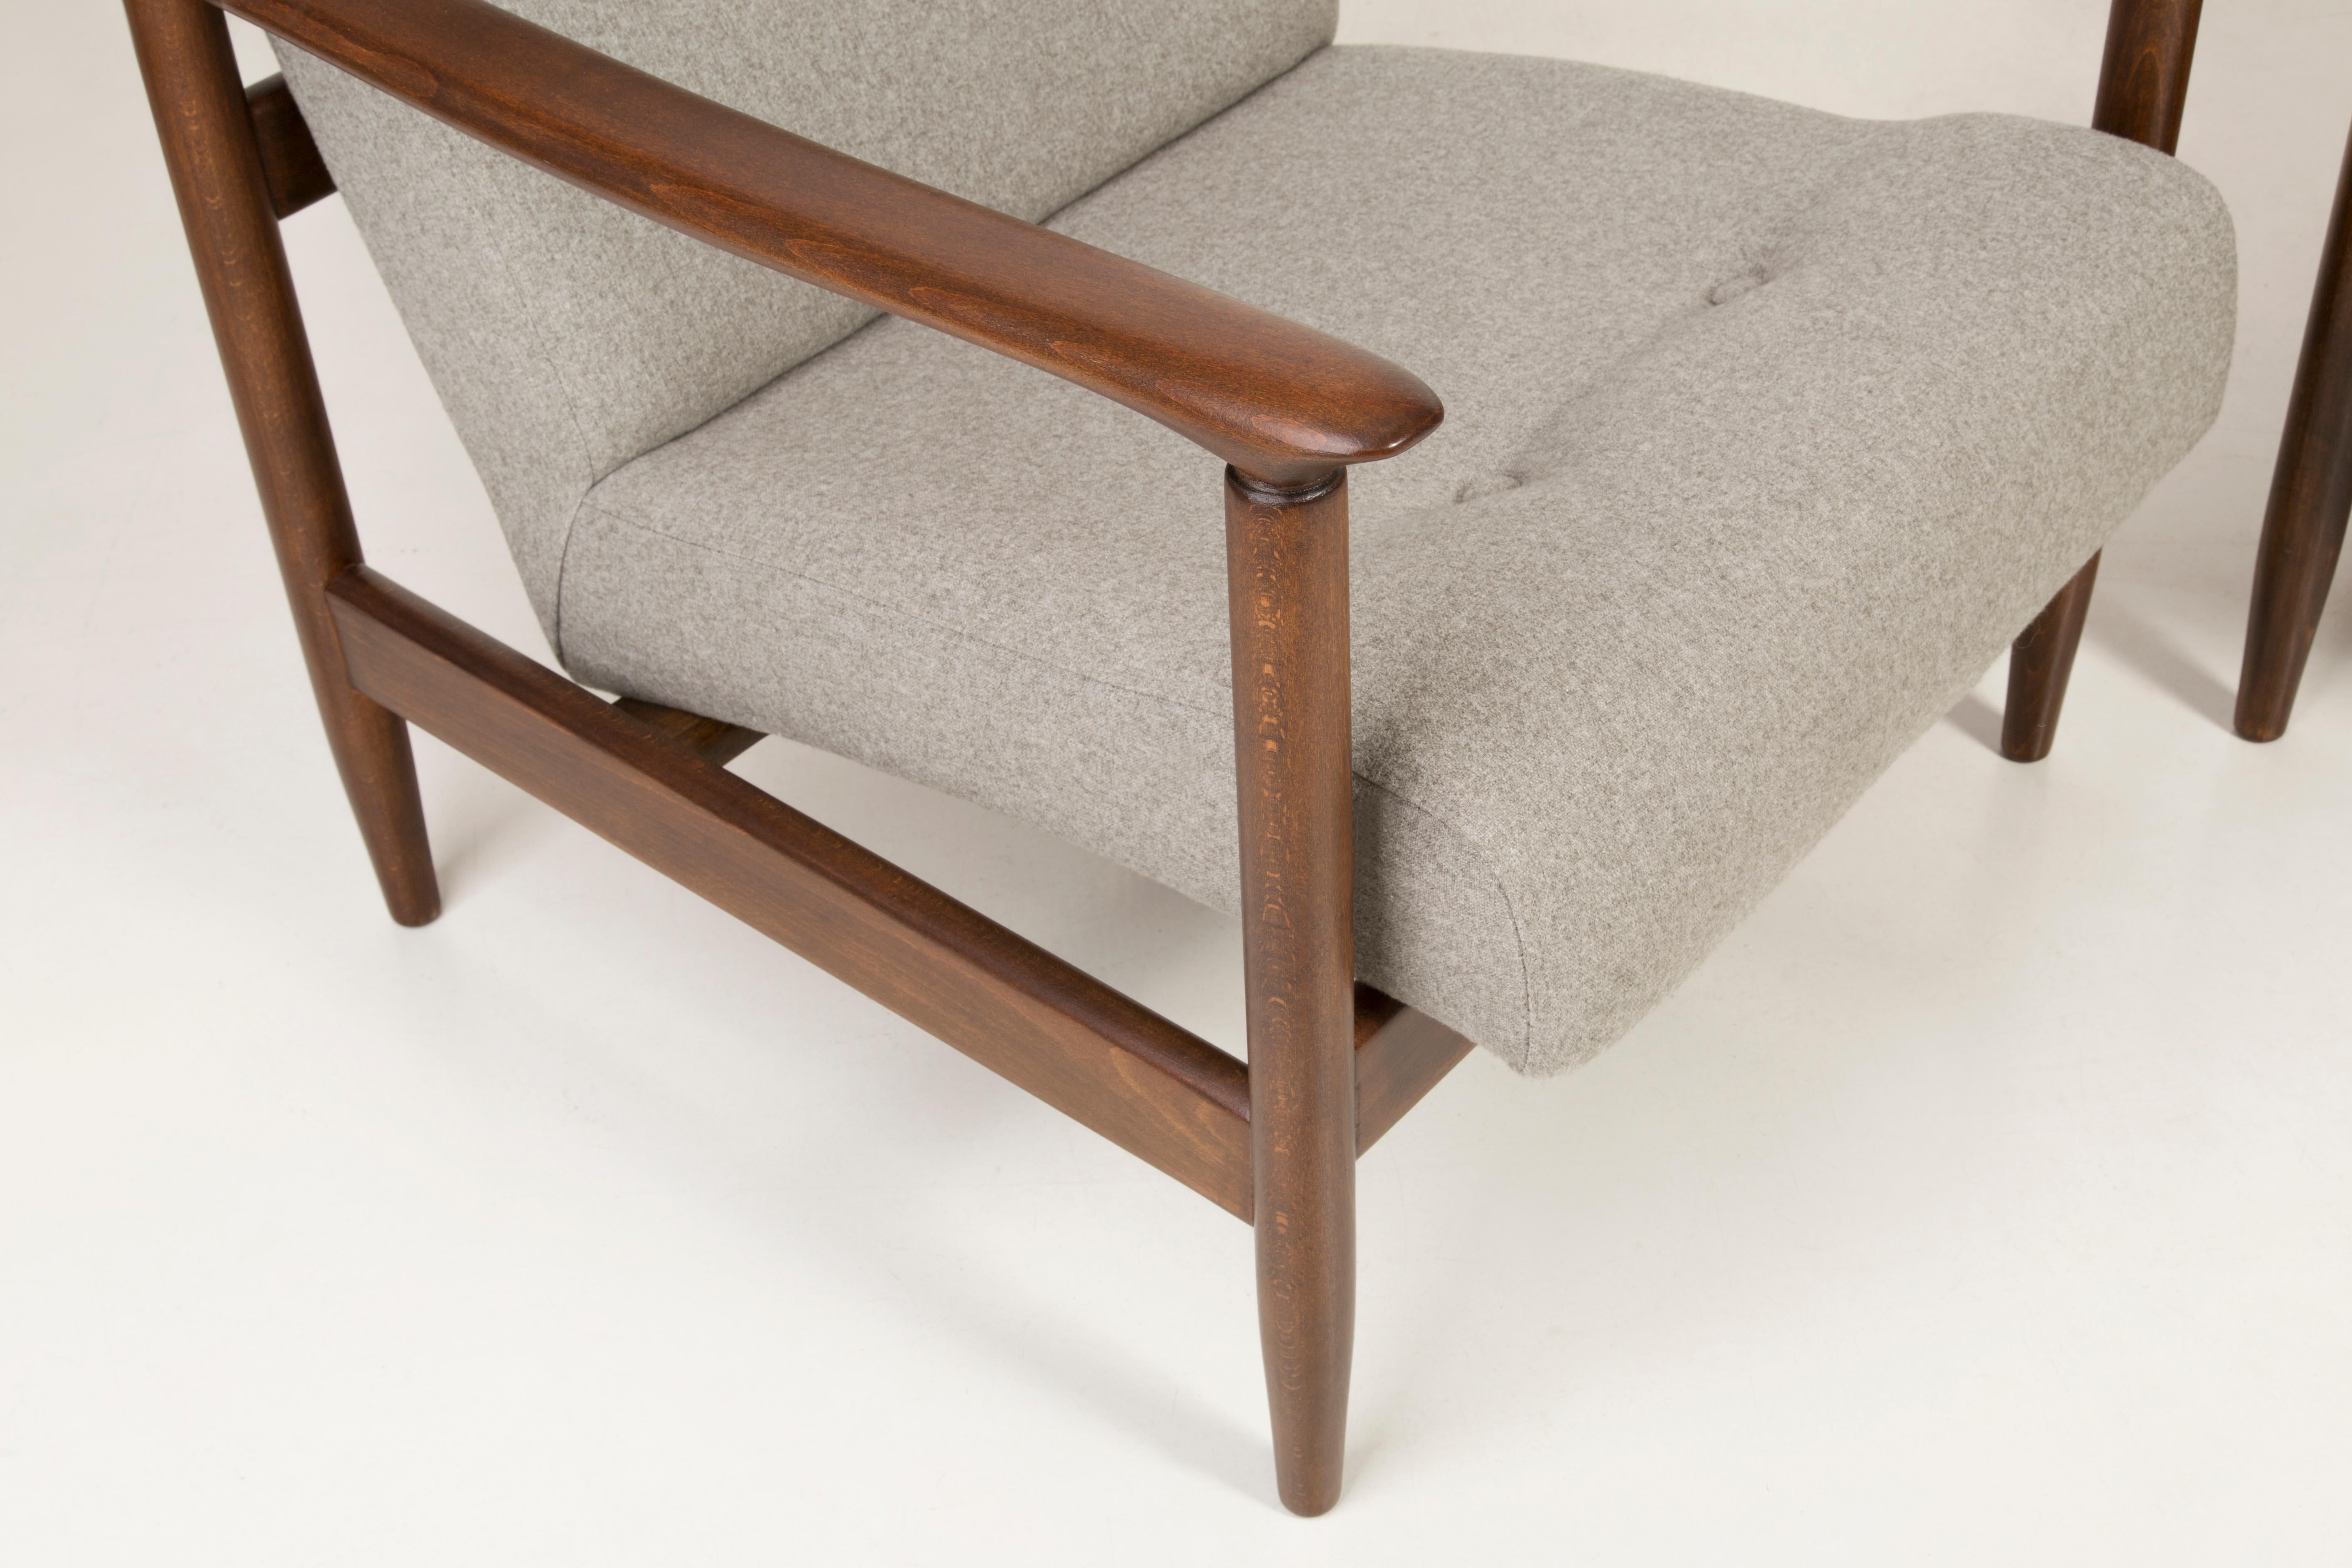 Une paire de fauteuils GFM-142, conçue par Edmund Homa. Les fauteuils ont été fabriqués dans les années 1960 dans l'usine de meubles Gosciecinska. Ils sont fabriqués en bois de hêtre massif. Le fauteuil GFM-142 est considéré comme l'un des meilleurs